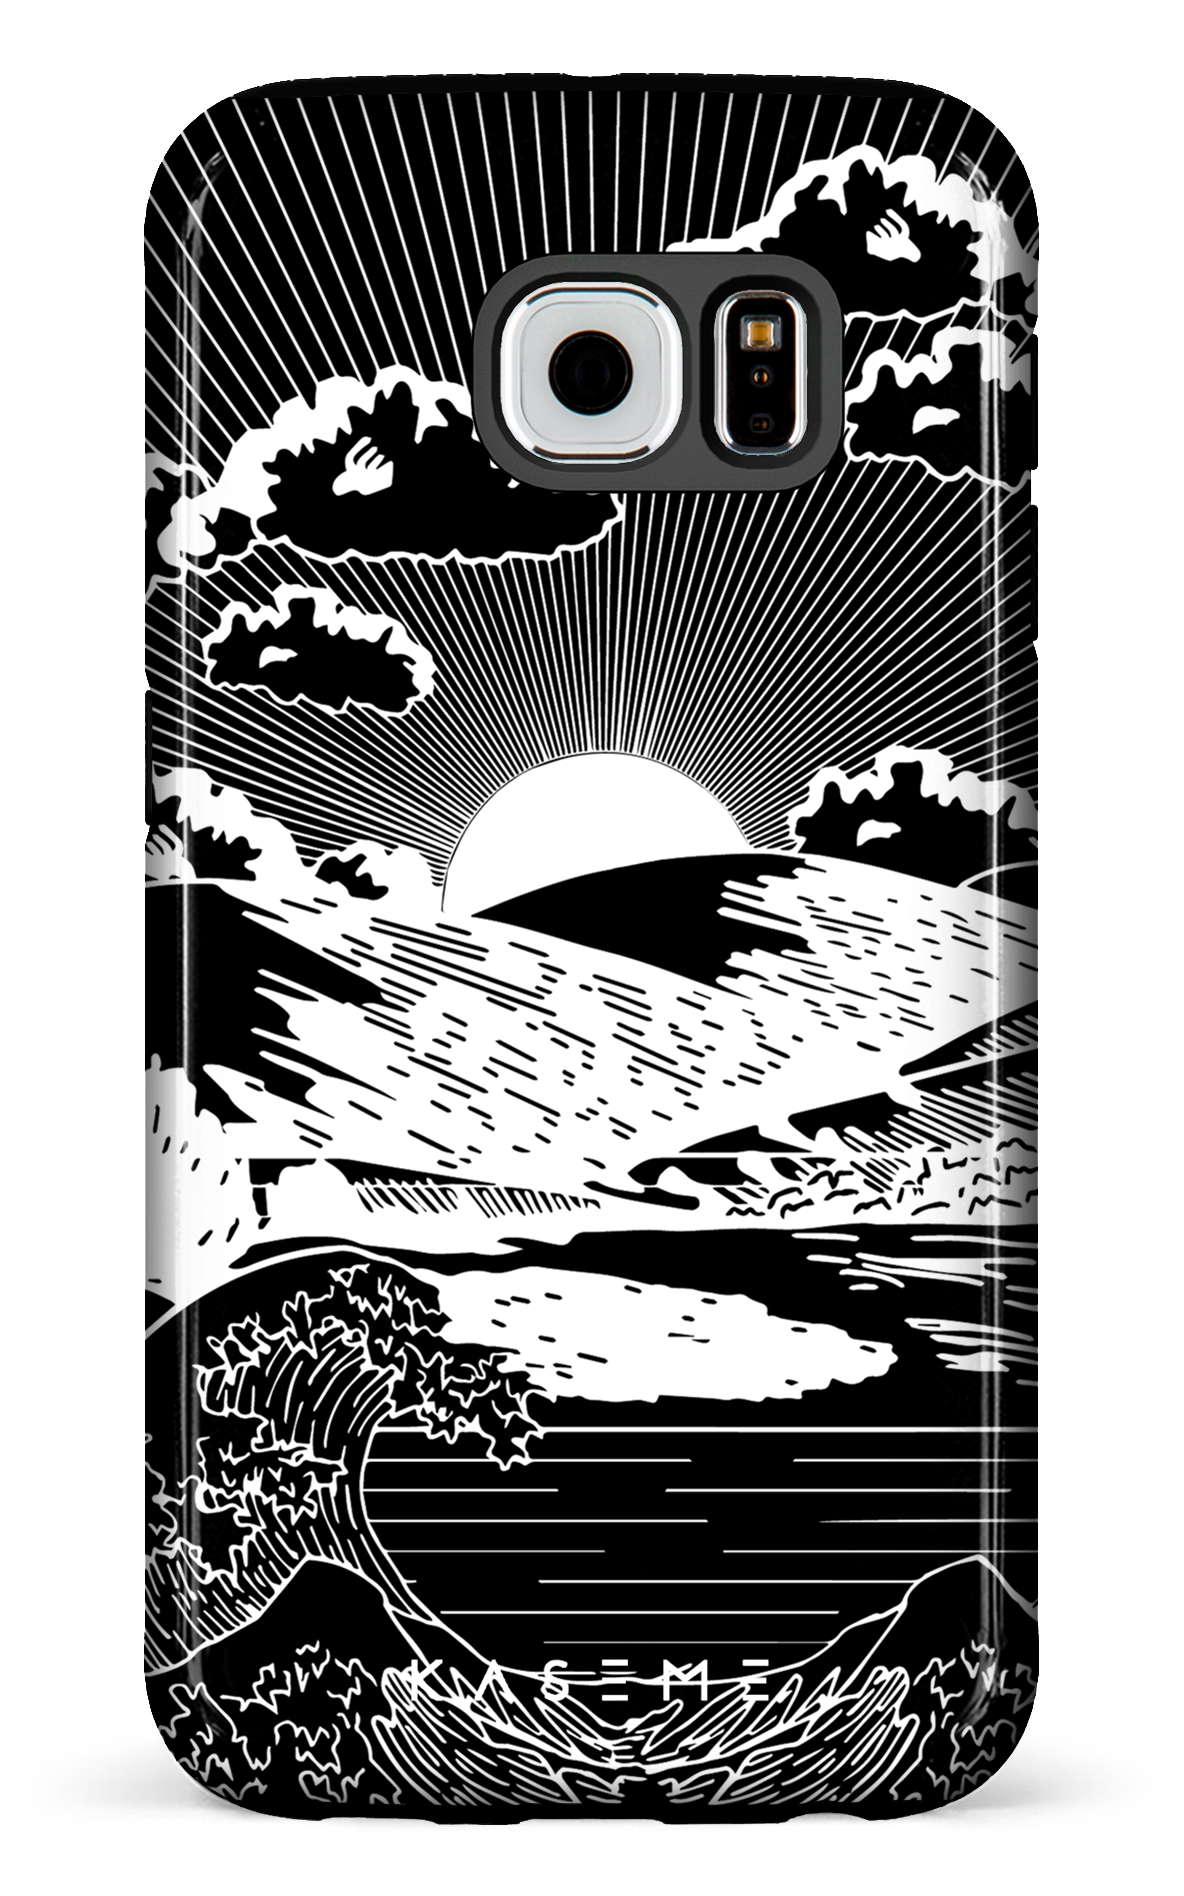 Sunbath black - Galaxy S6